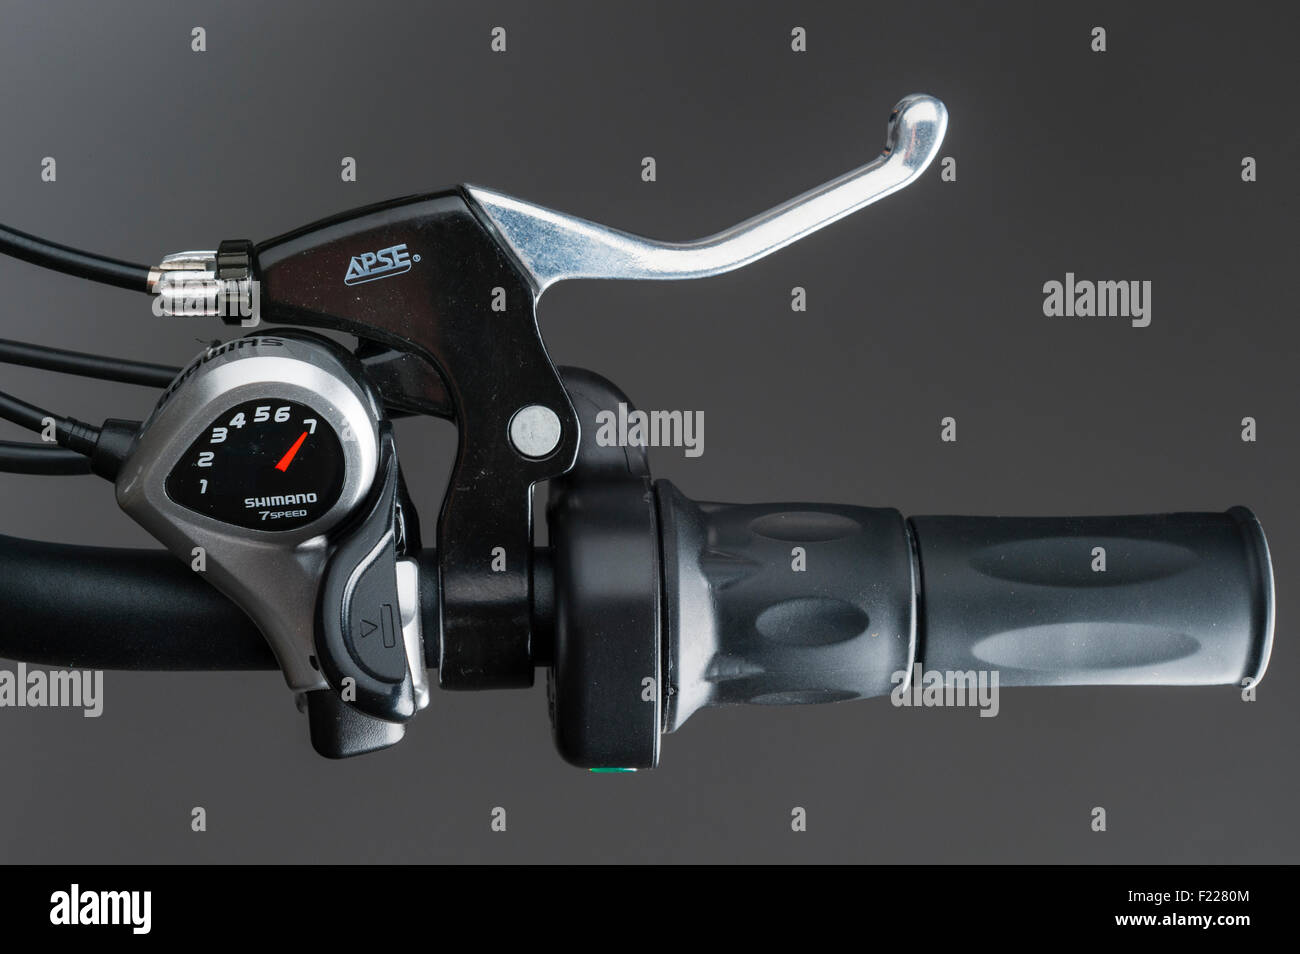 Wisper e-Bike. Bremshebel und Shimano 7-Gang Geschwindigkeitsänderung  Stockfotografie - Alamy